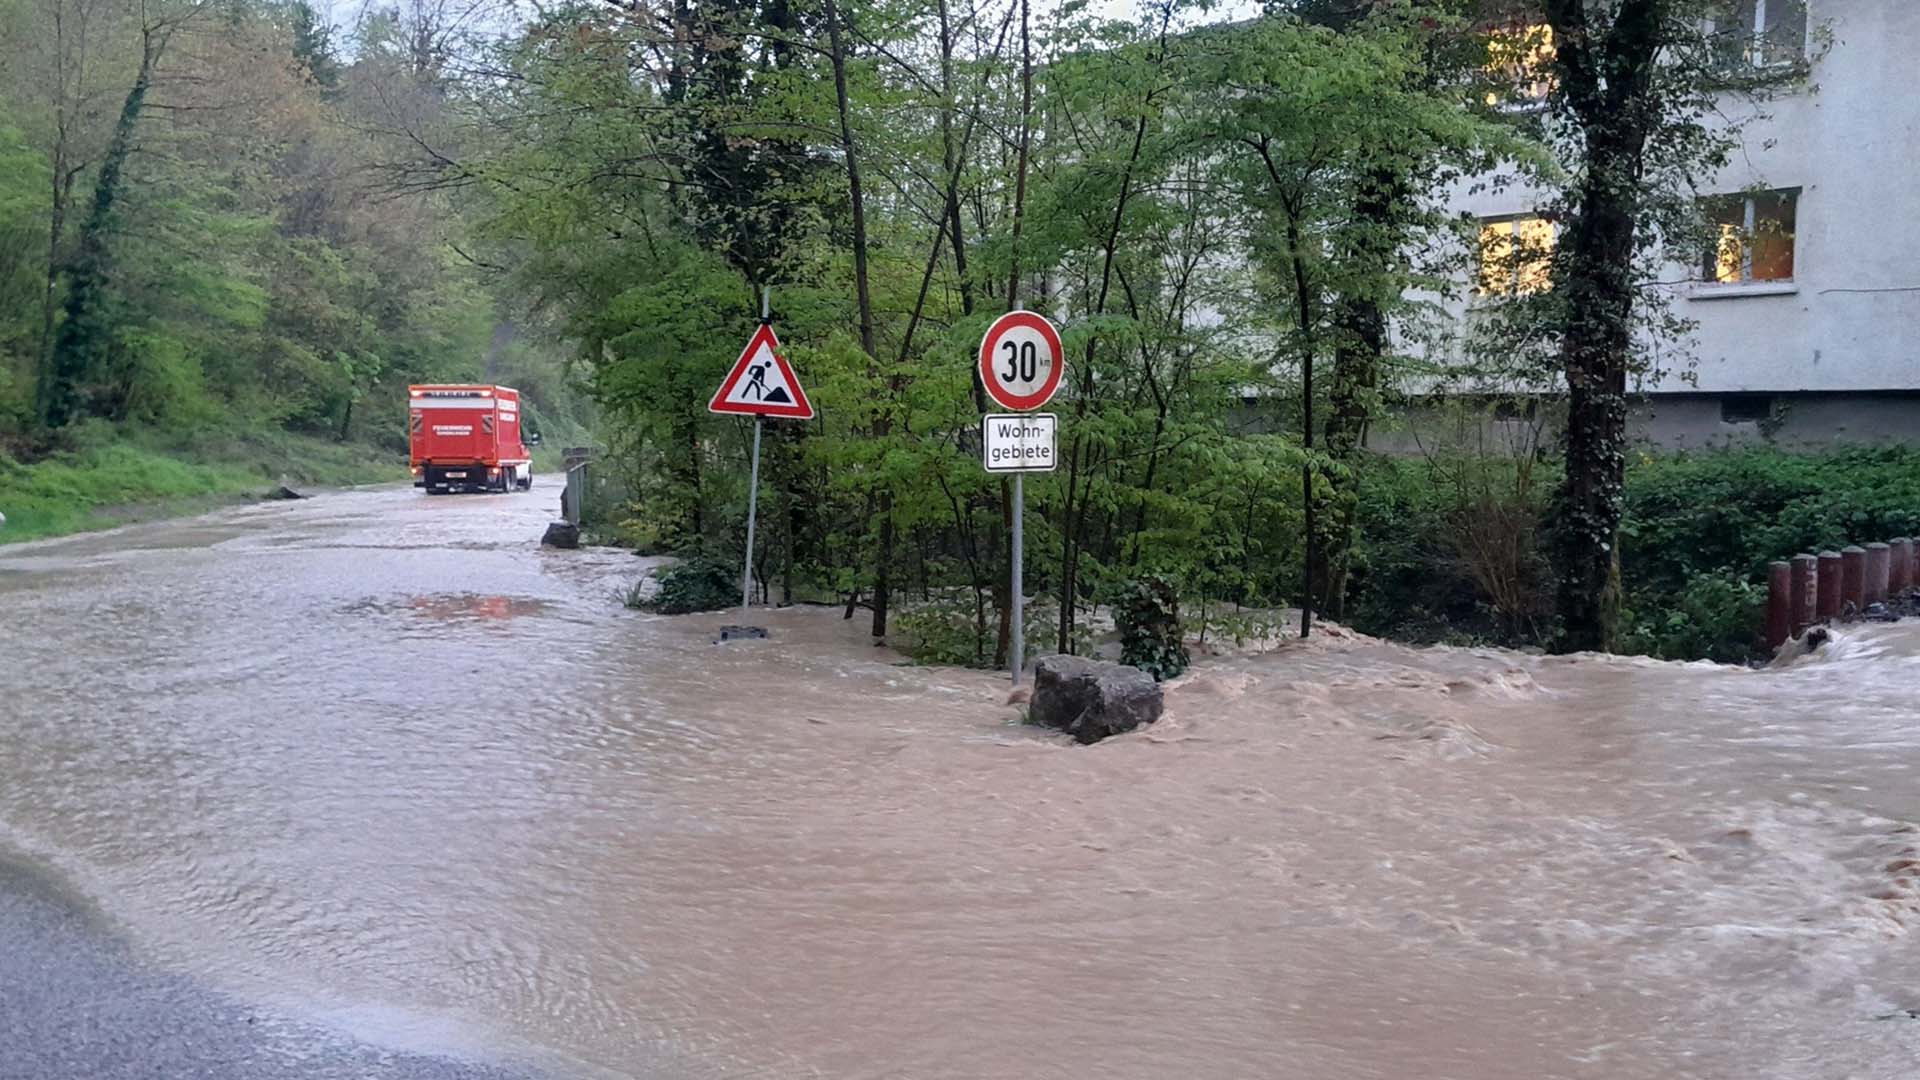 Überschwemmte Straße in Gundelsheim mit einem Einsatzfahrzeug der Feuerwehr